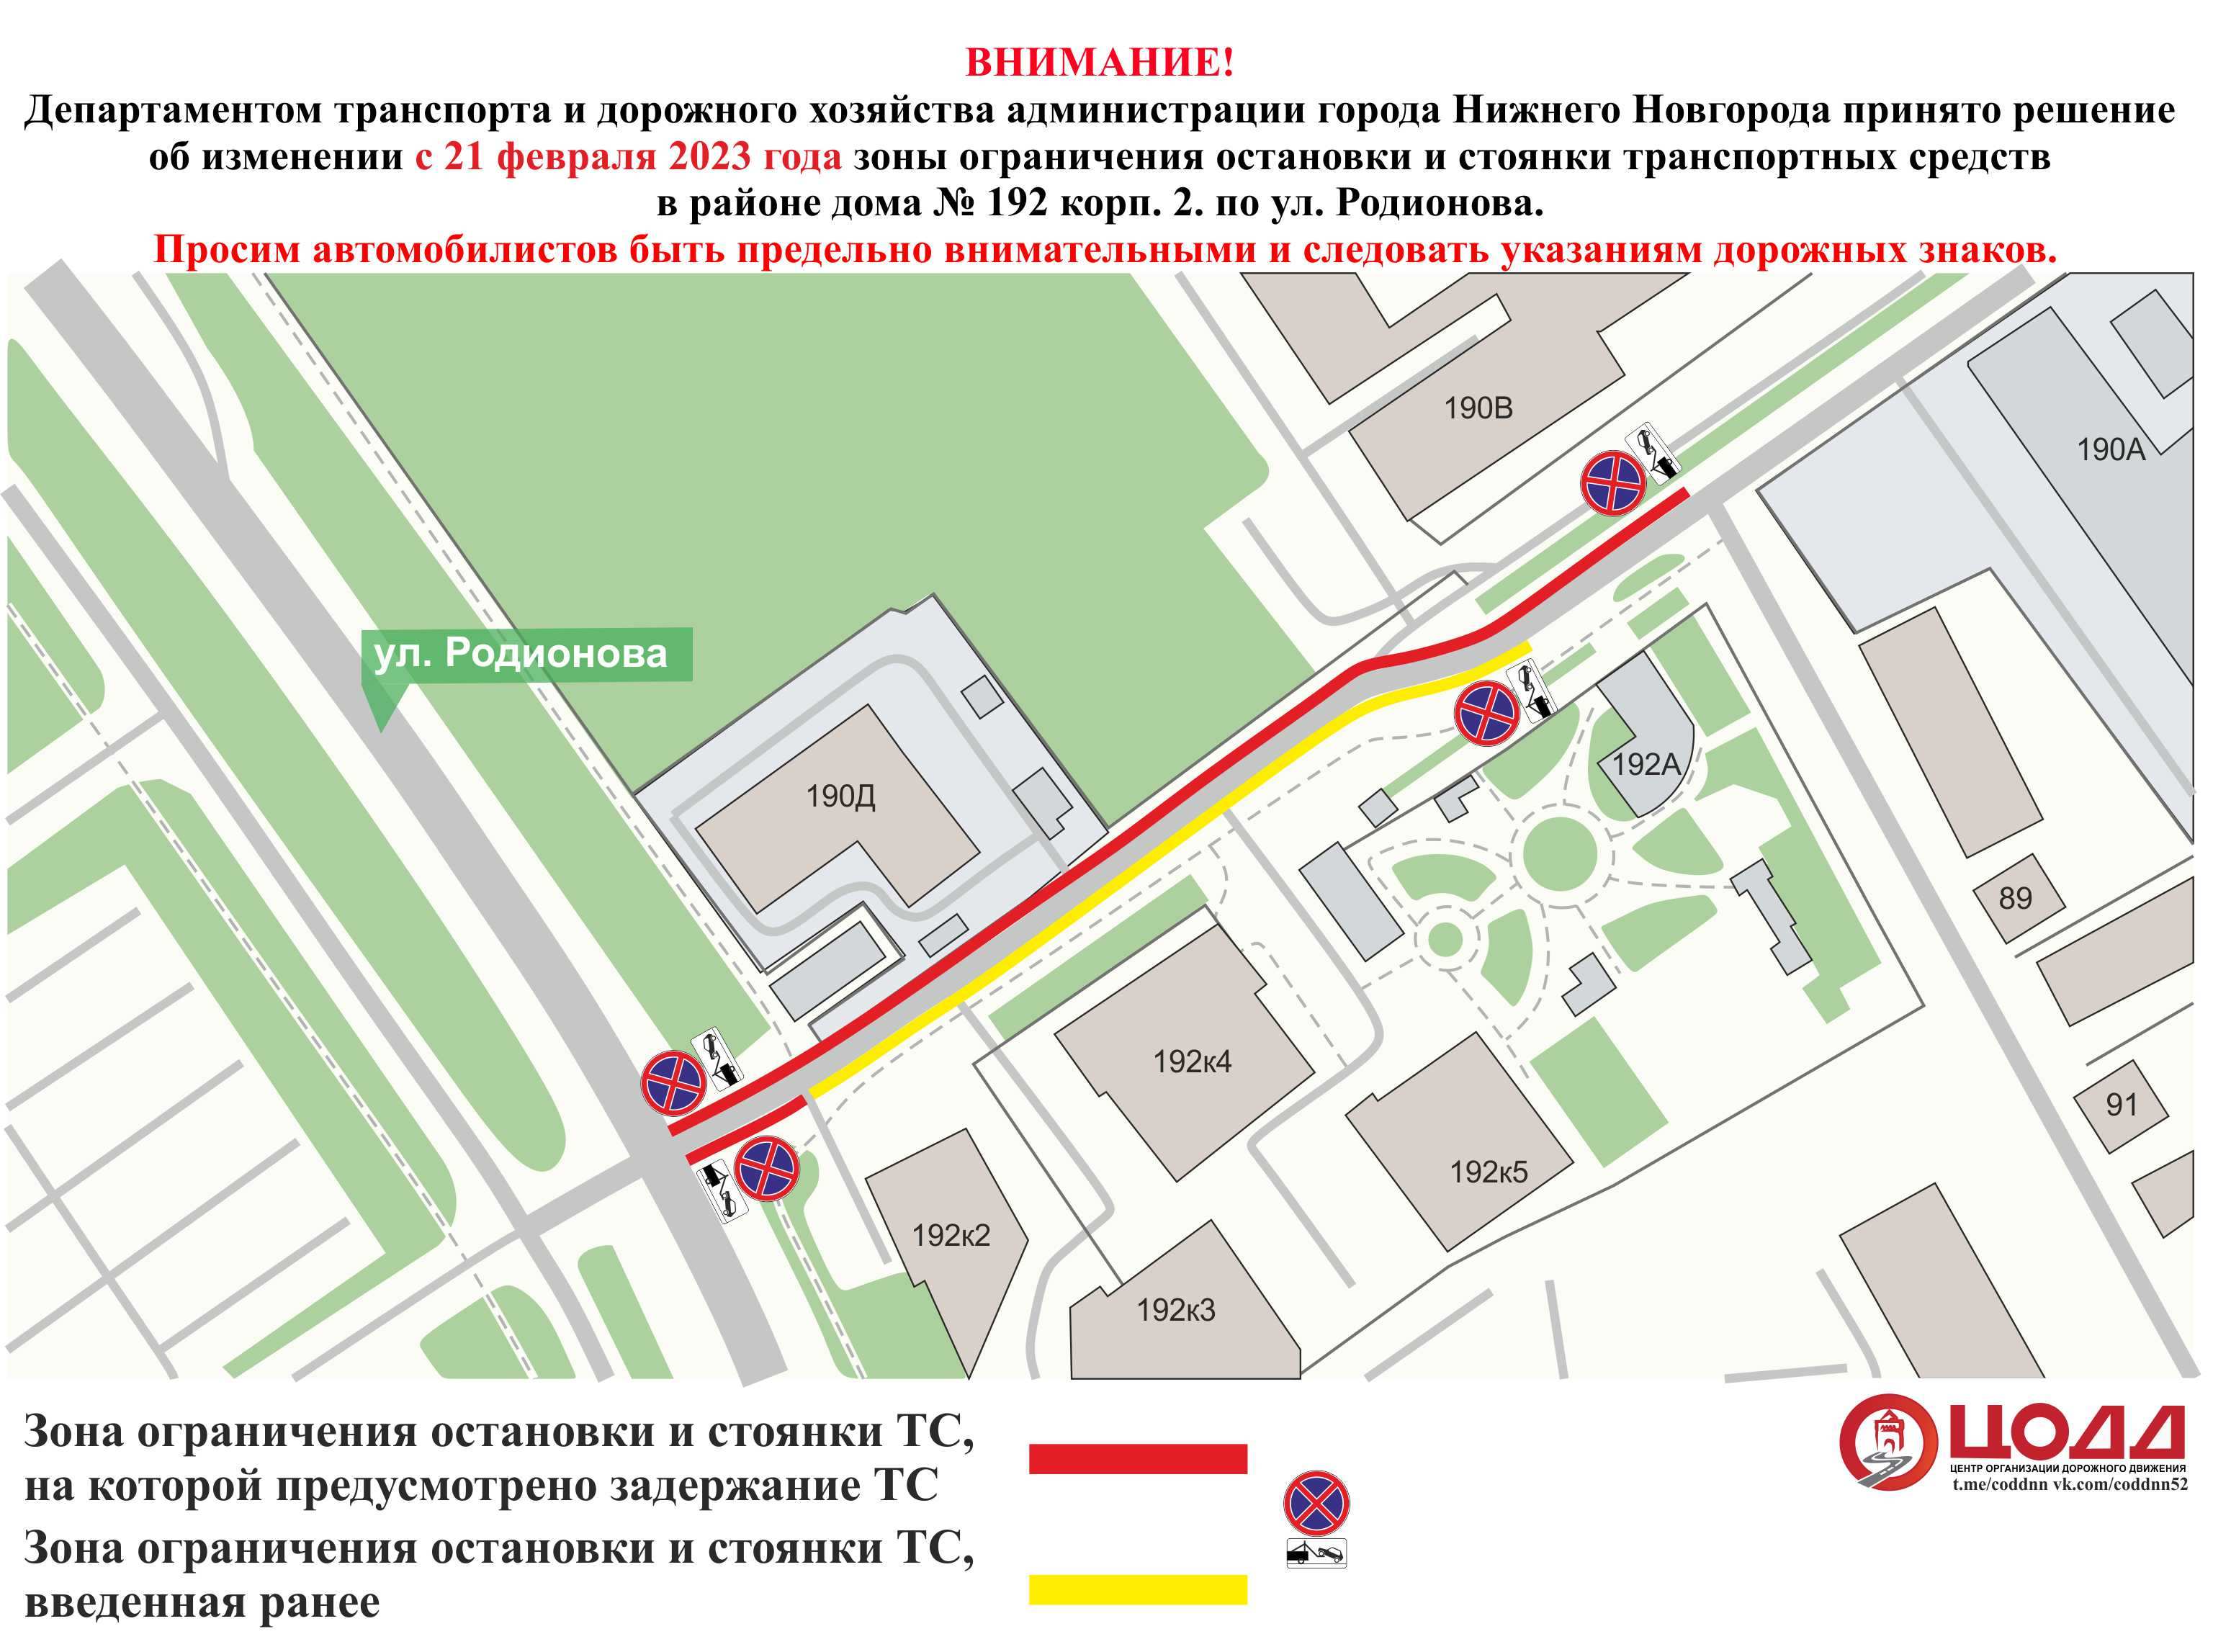 Парковку ограничат на улице Родионова в Нижнем Новгороде с 21 февраля - фото 1